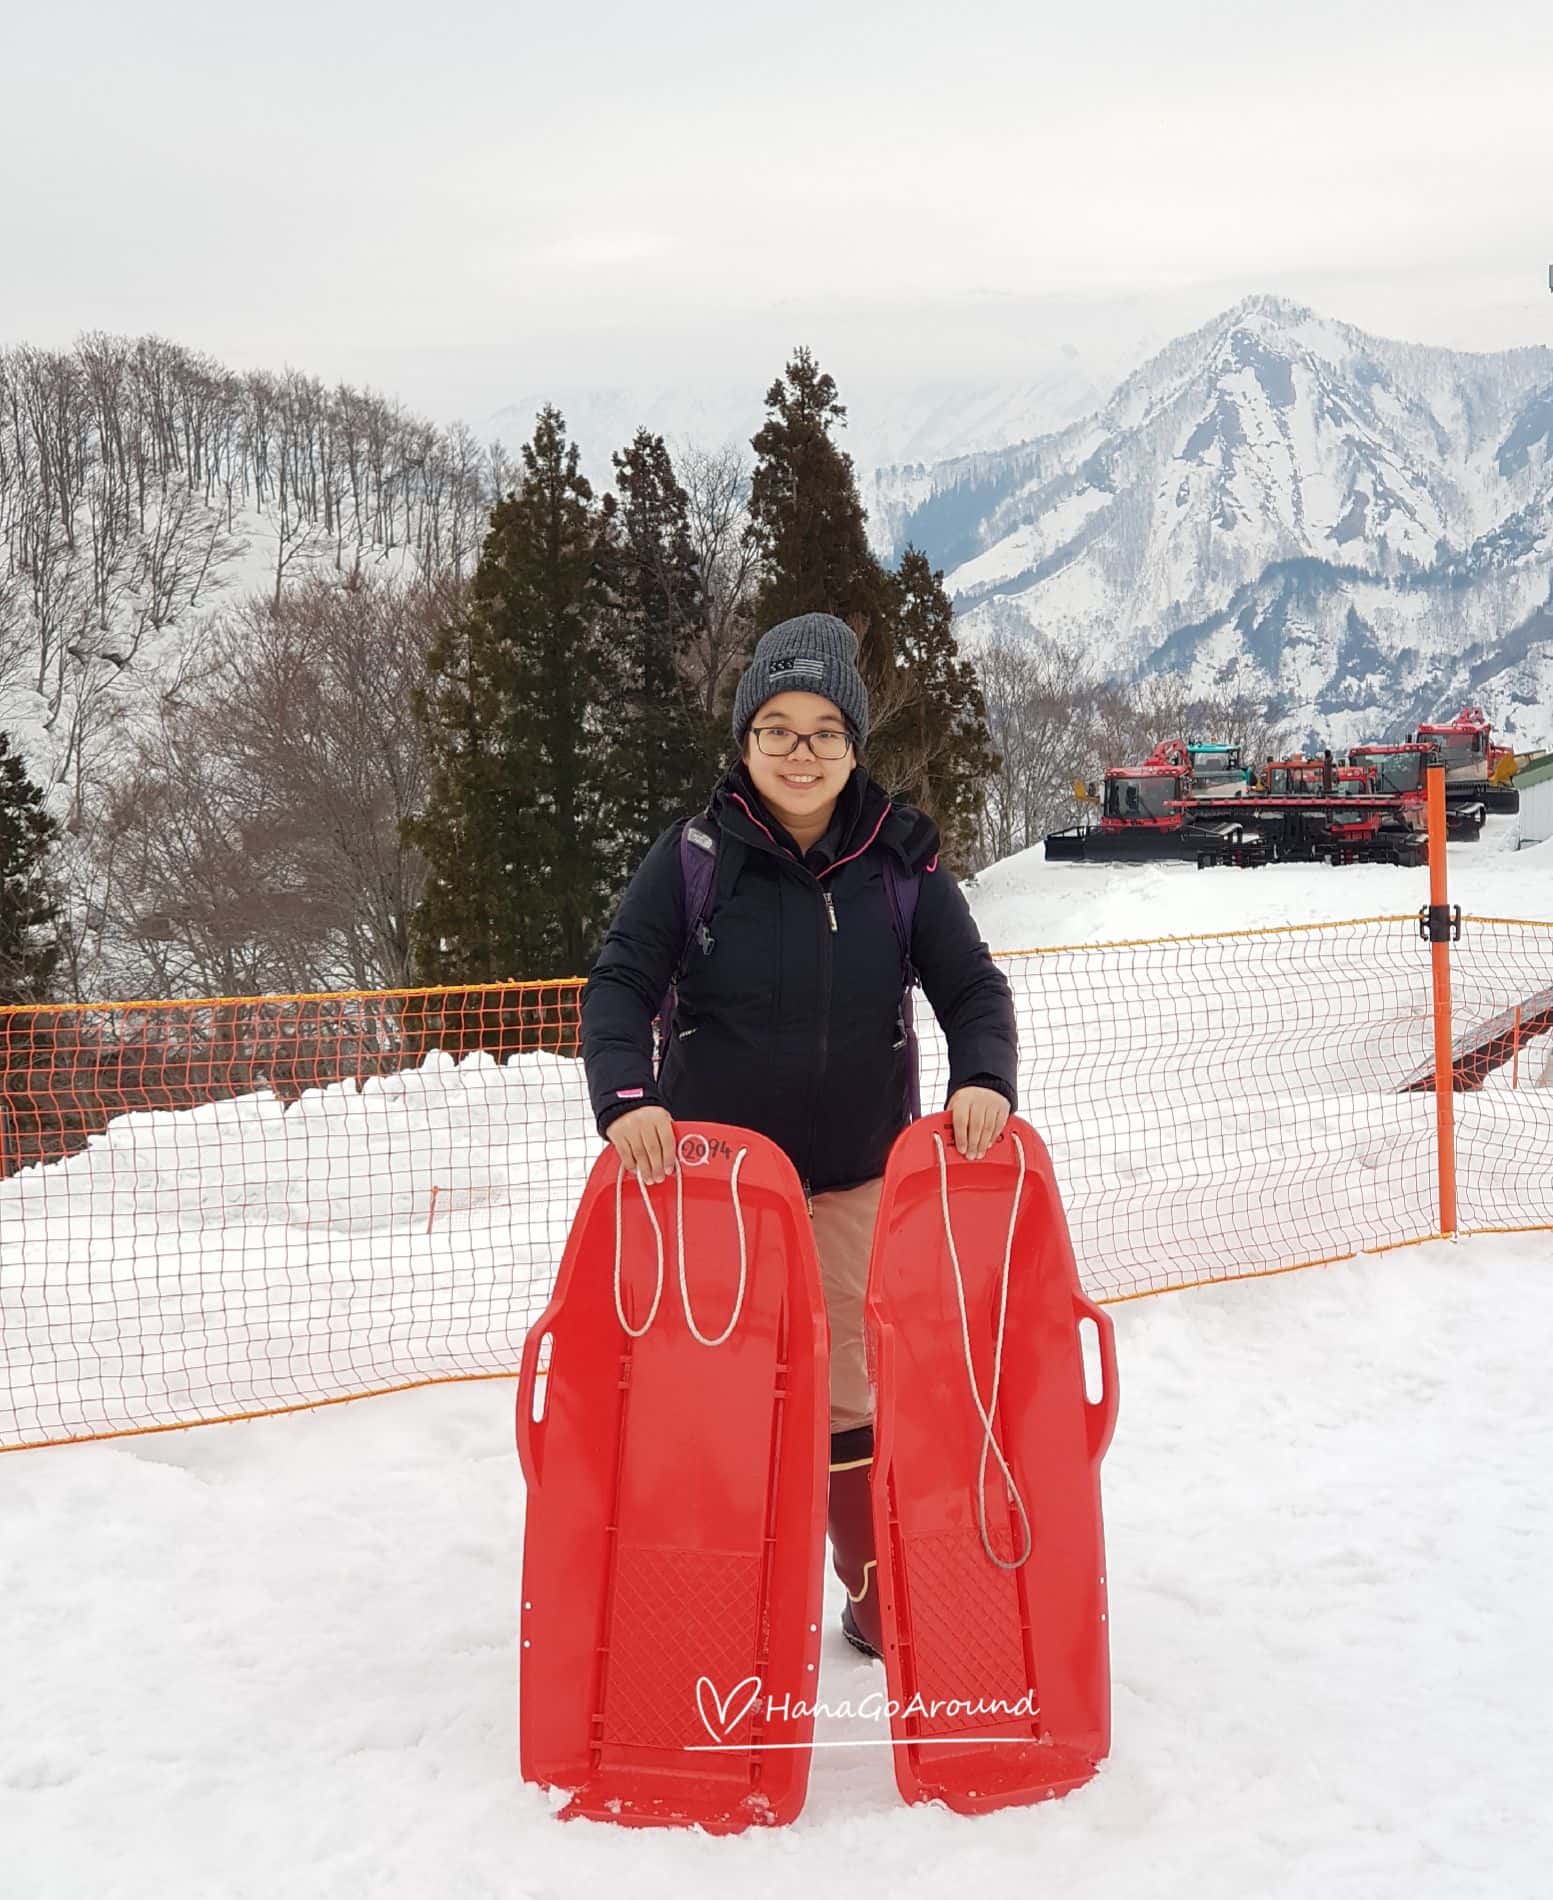 รีวิวเที่ยวเมืองหิมะ เล่นสโนว์สุดฟิน in Gala Yuzawa Snow Resort ที่เมืองเอจิโหงะ-ยูซาว่า (Echigo-Yuzawa)